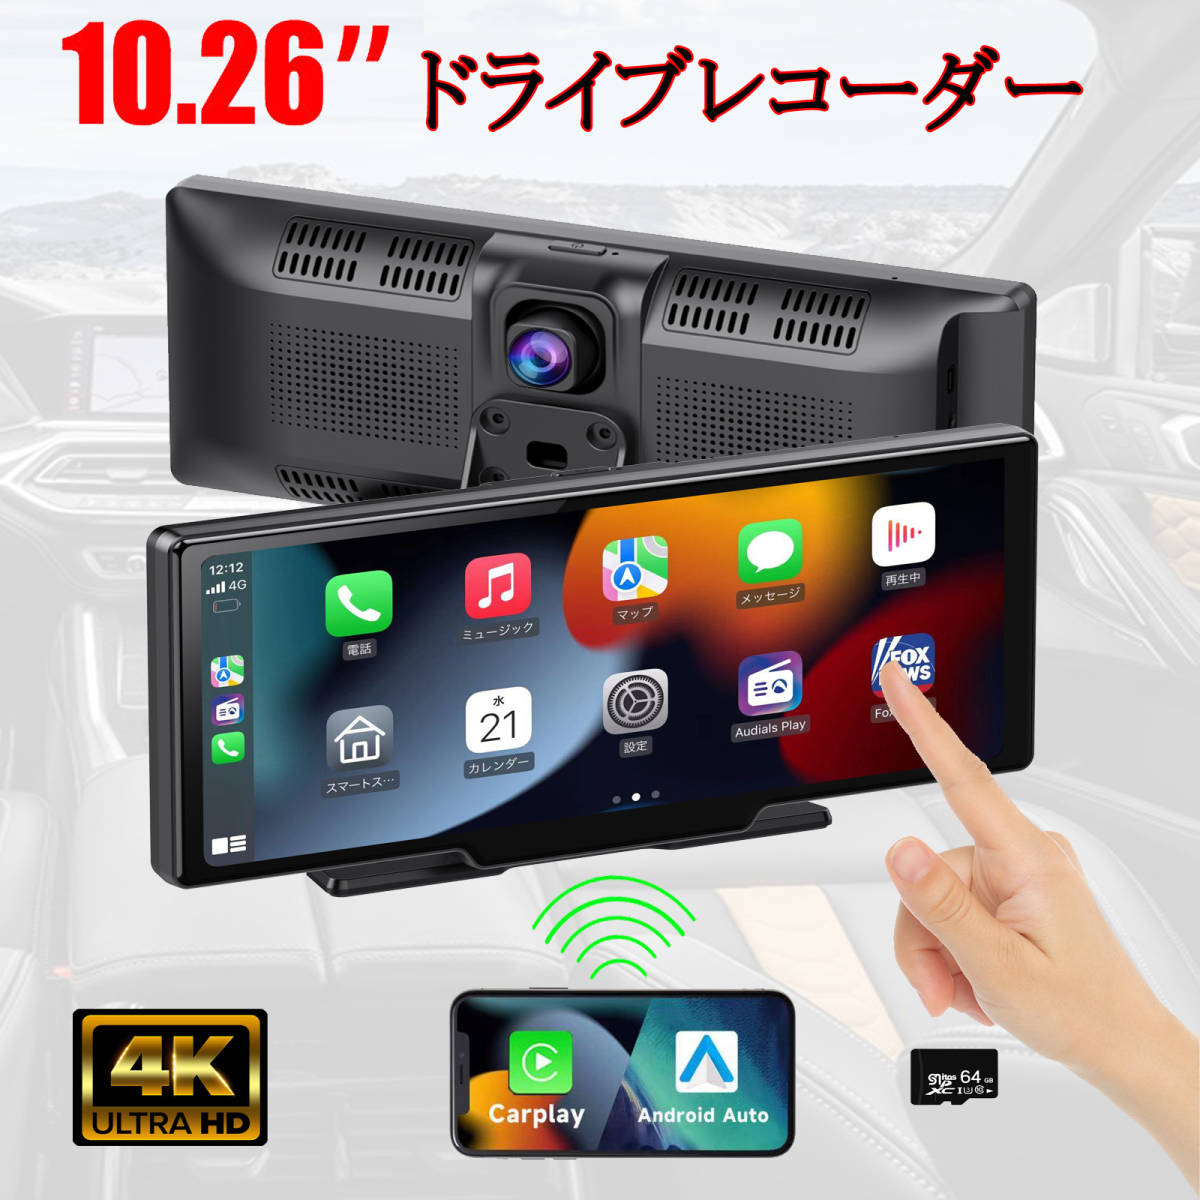 10.26インチ大画面CarPlay /Android Auto対応 フロント車載モニター 動画再生 リアカメラー付き IPS液晶 ナビ 64GbSDカード付き